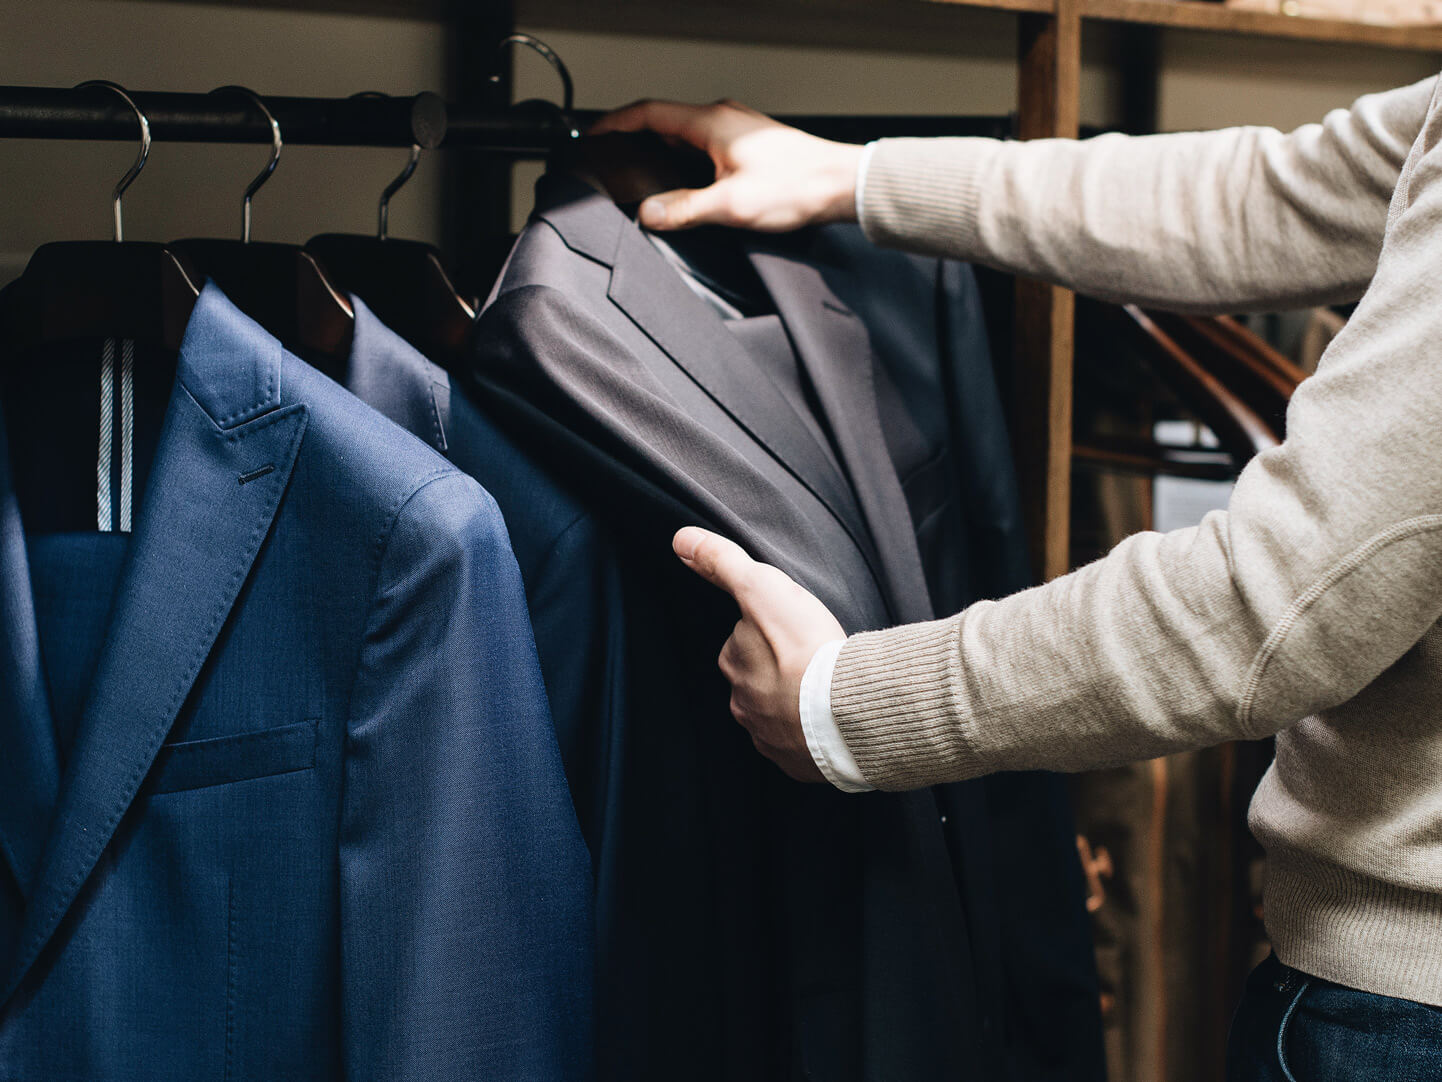 Guide: Hvad skal man tænke på ved køb af jakkesæt?